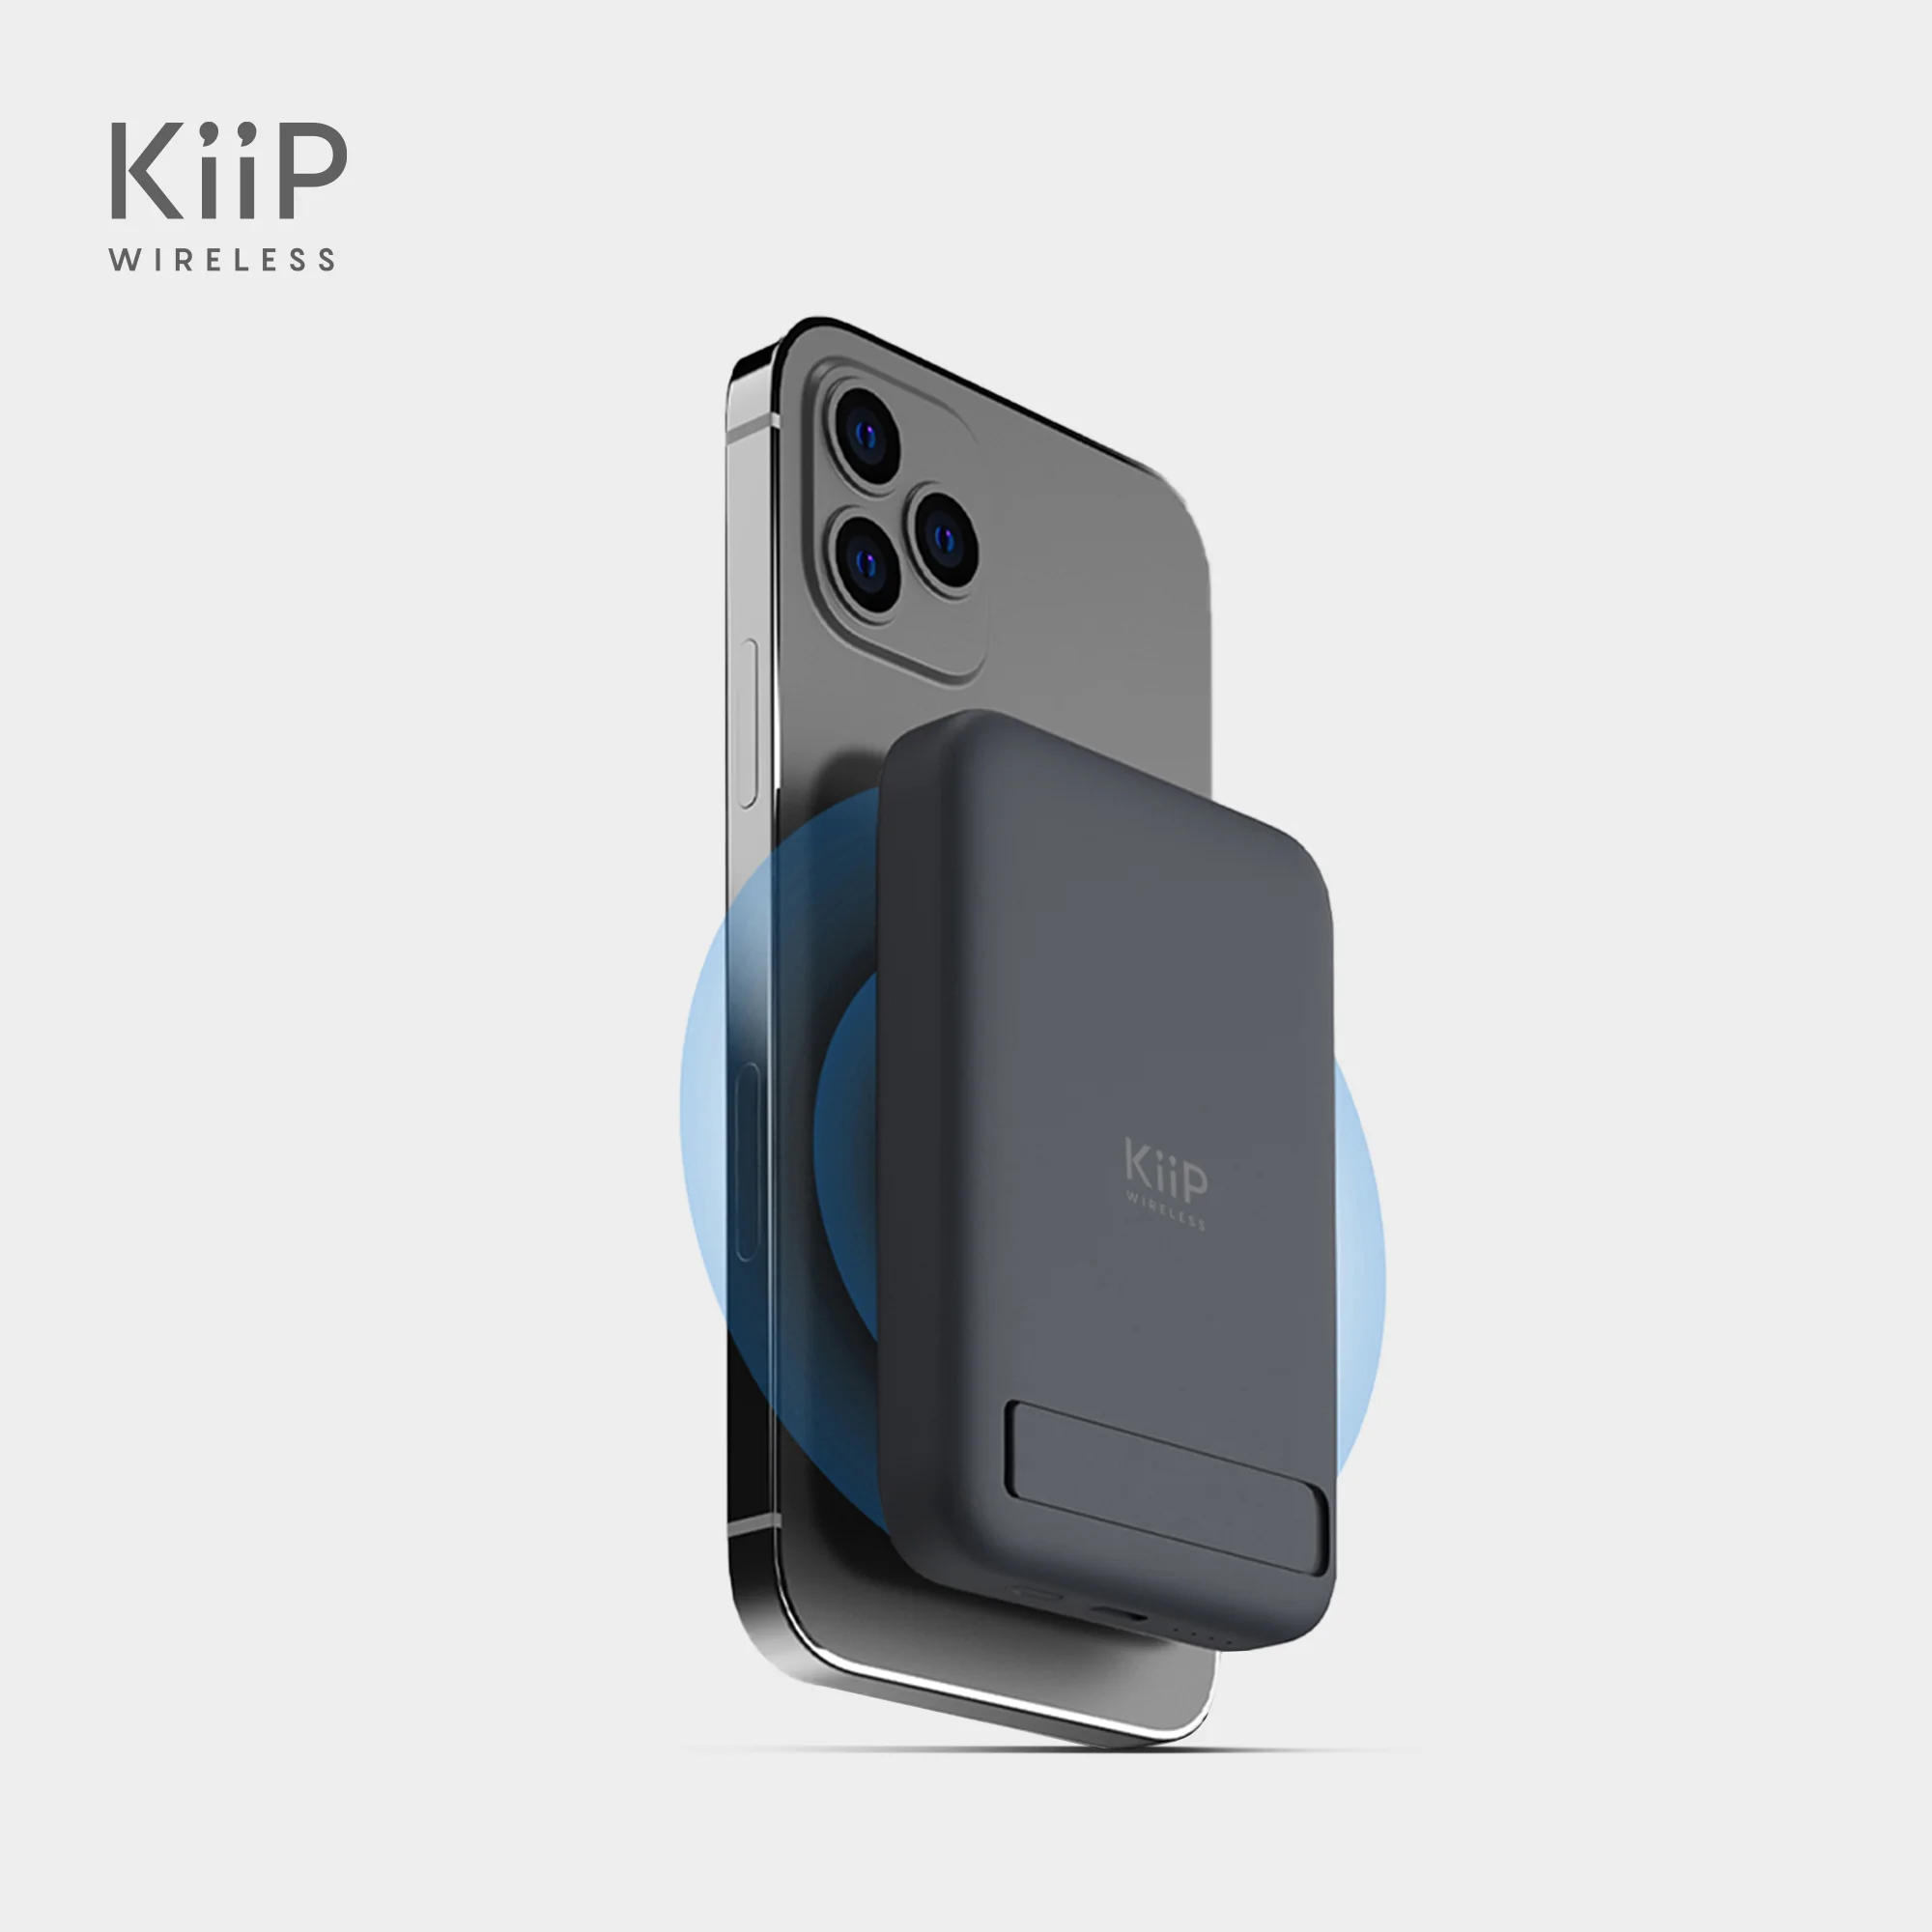 Kiip Powerbank – KiiP Wireless